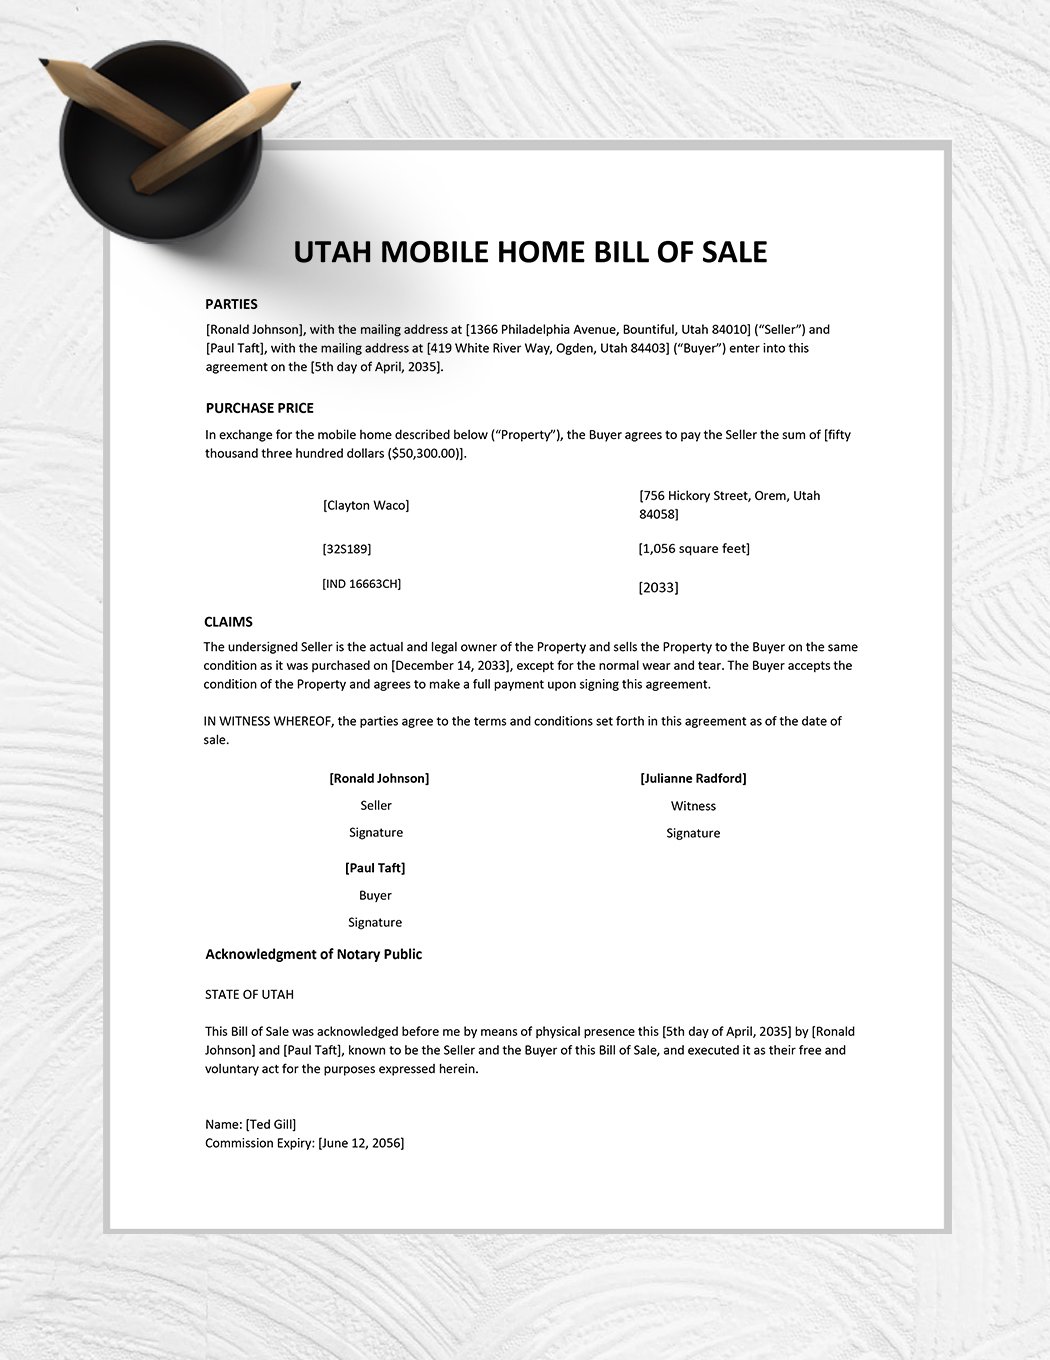 Utah Mobile Home Bill of Sale Template